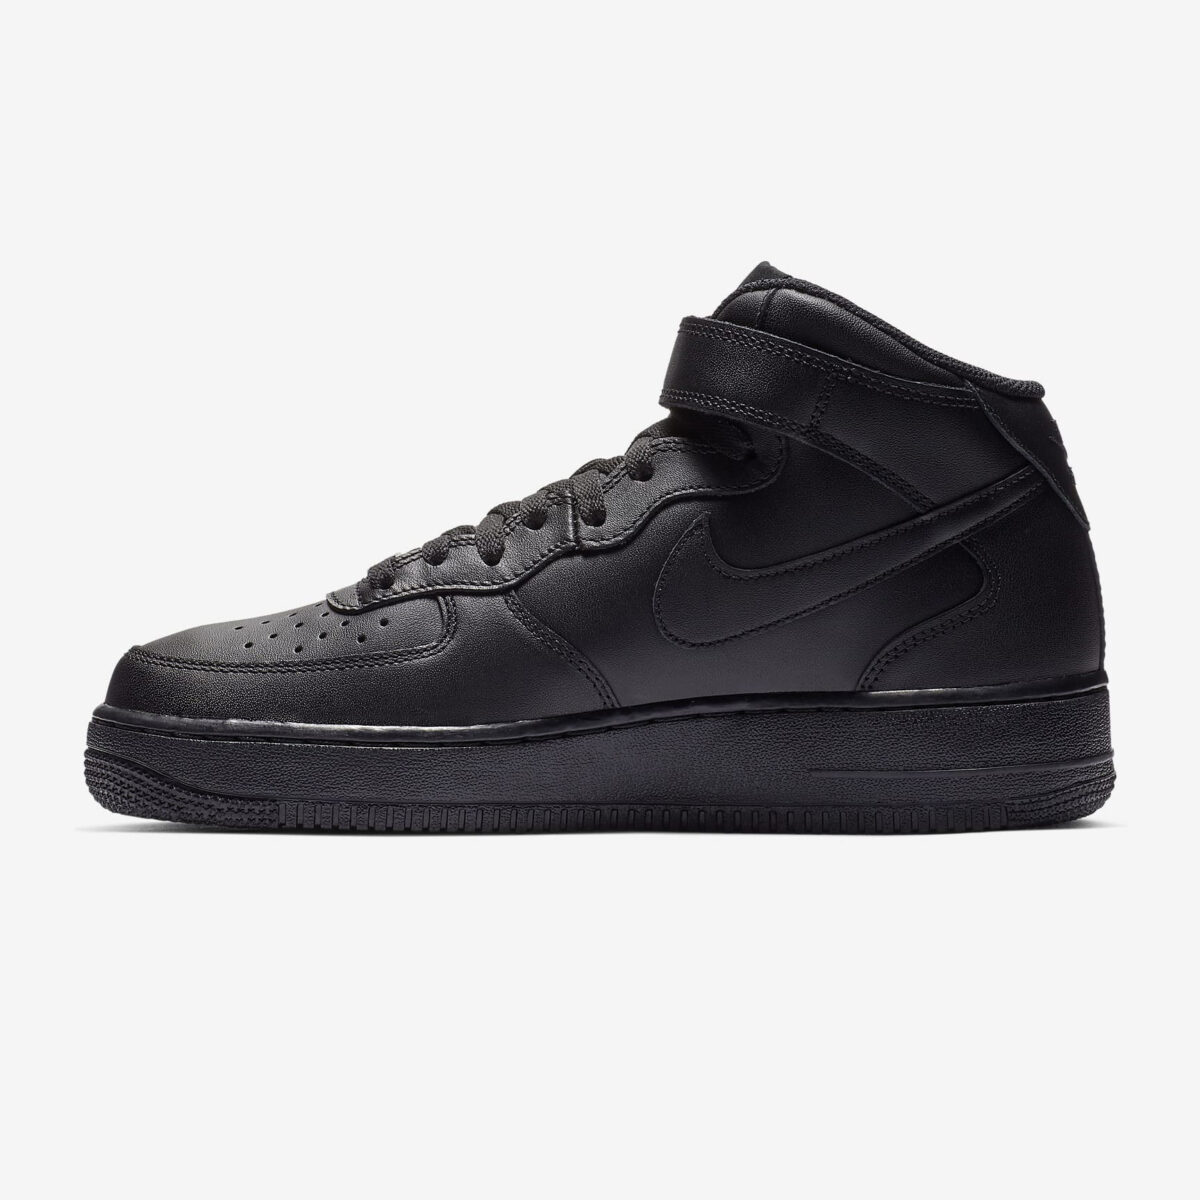 Herren Schuhe Nike Air Force 1 07 Mid schwarz